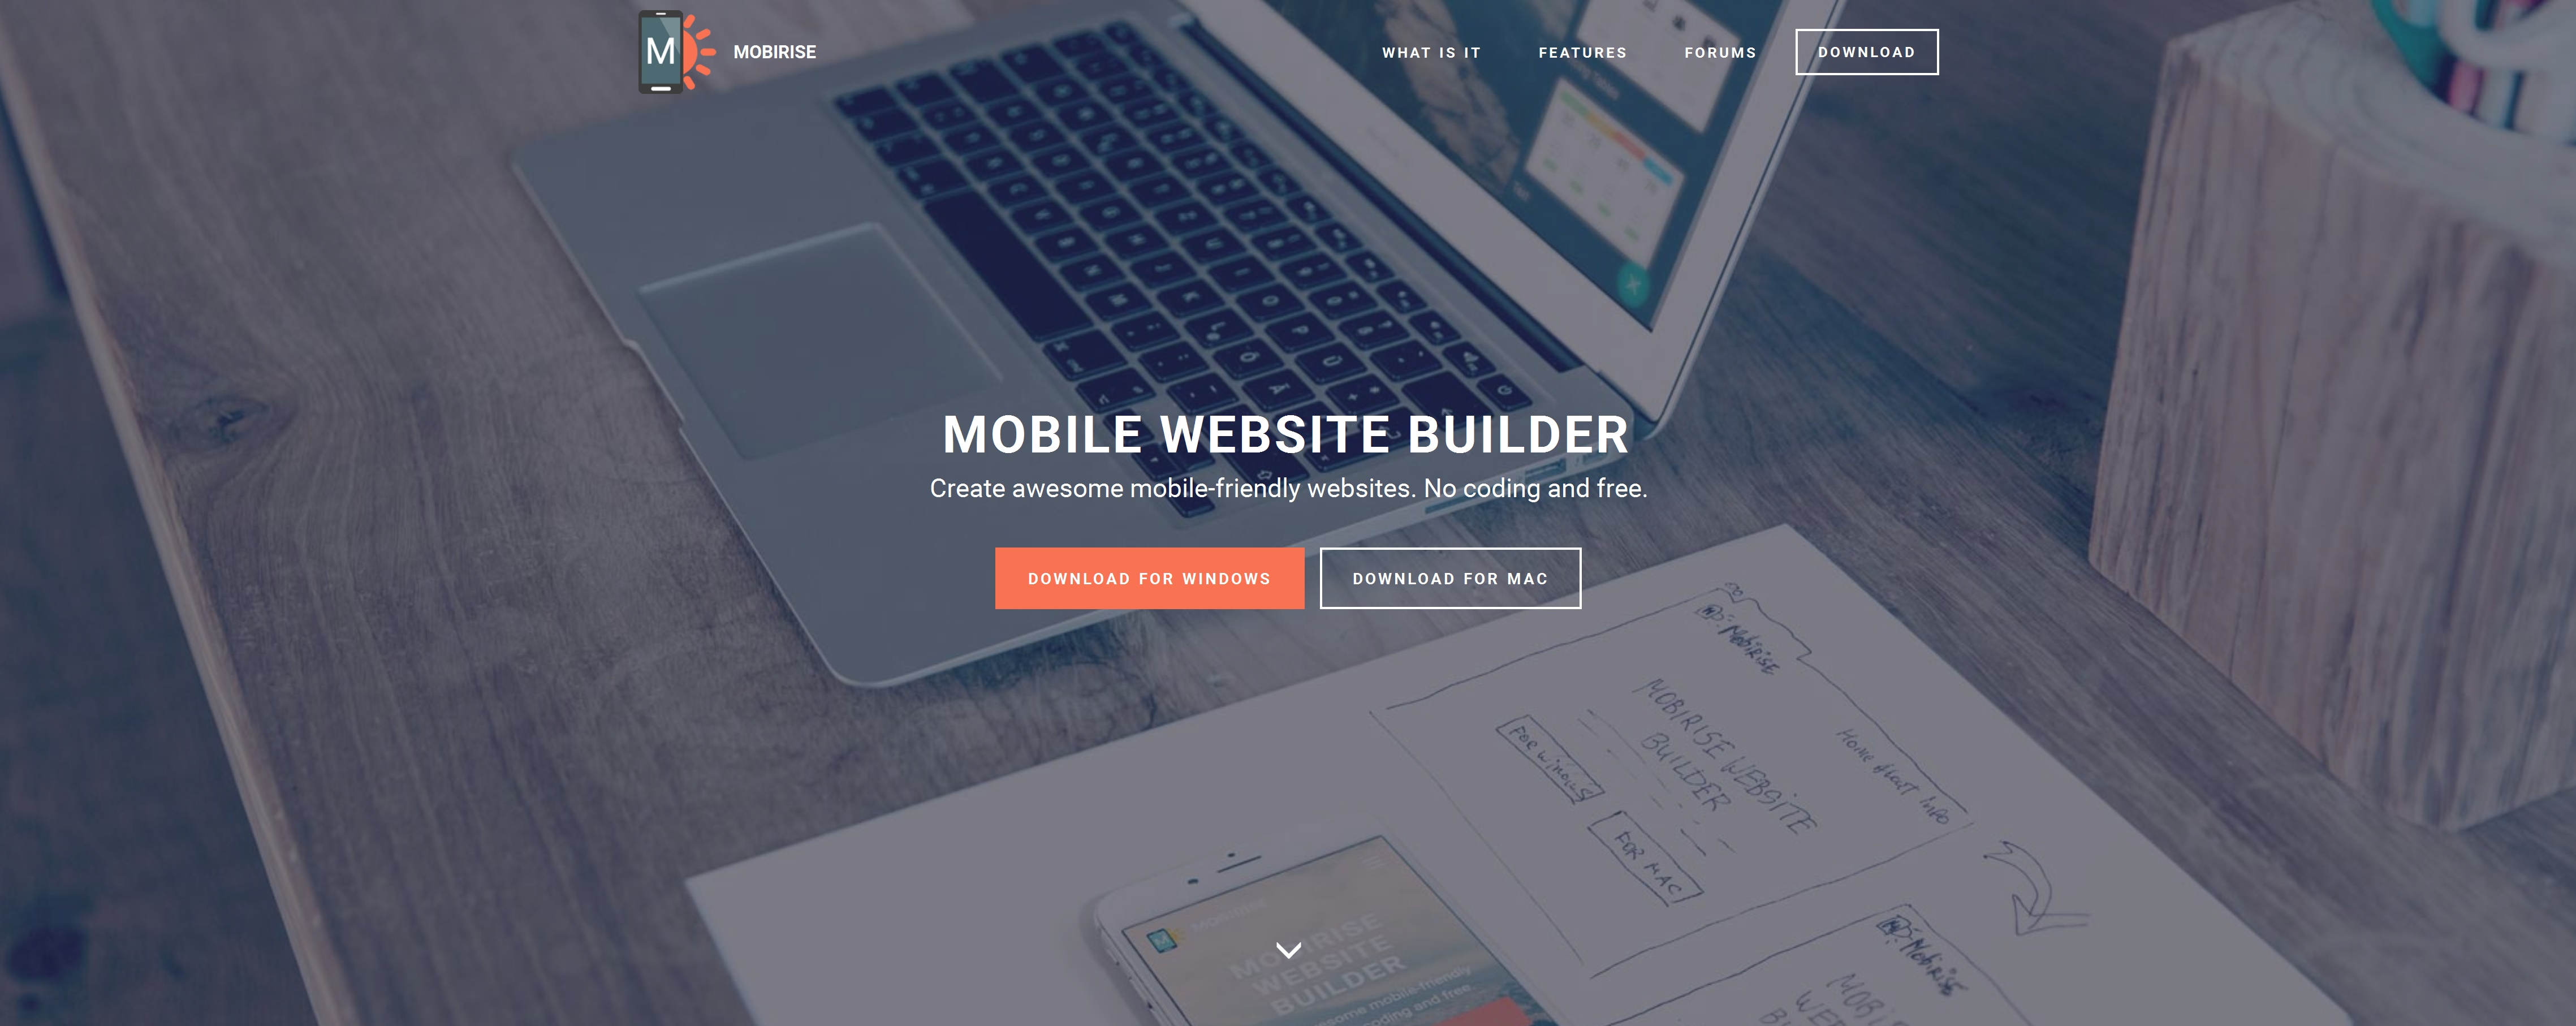 Best Mobile Website Builder Software